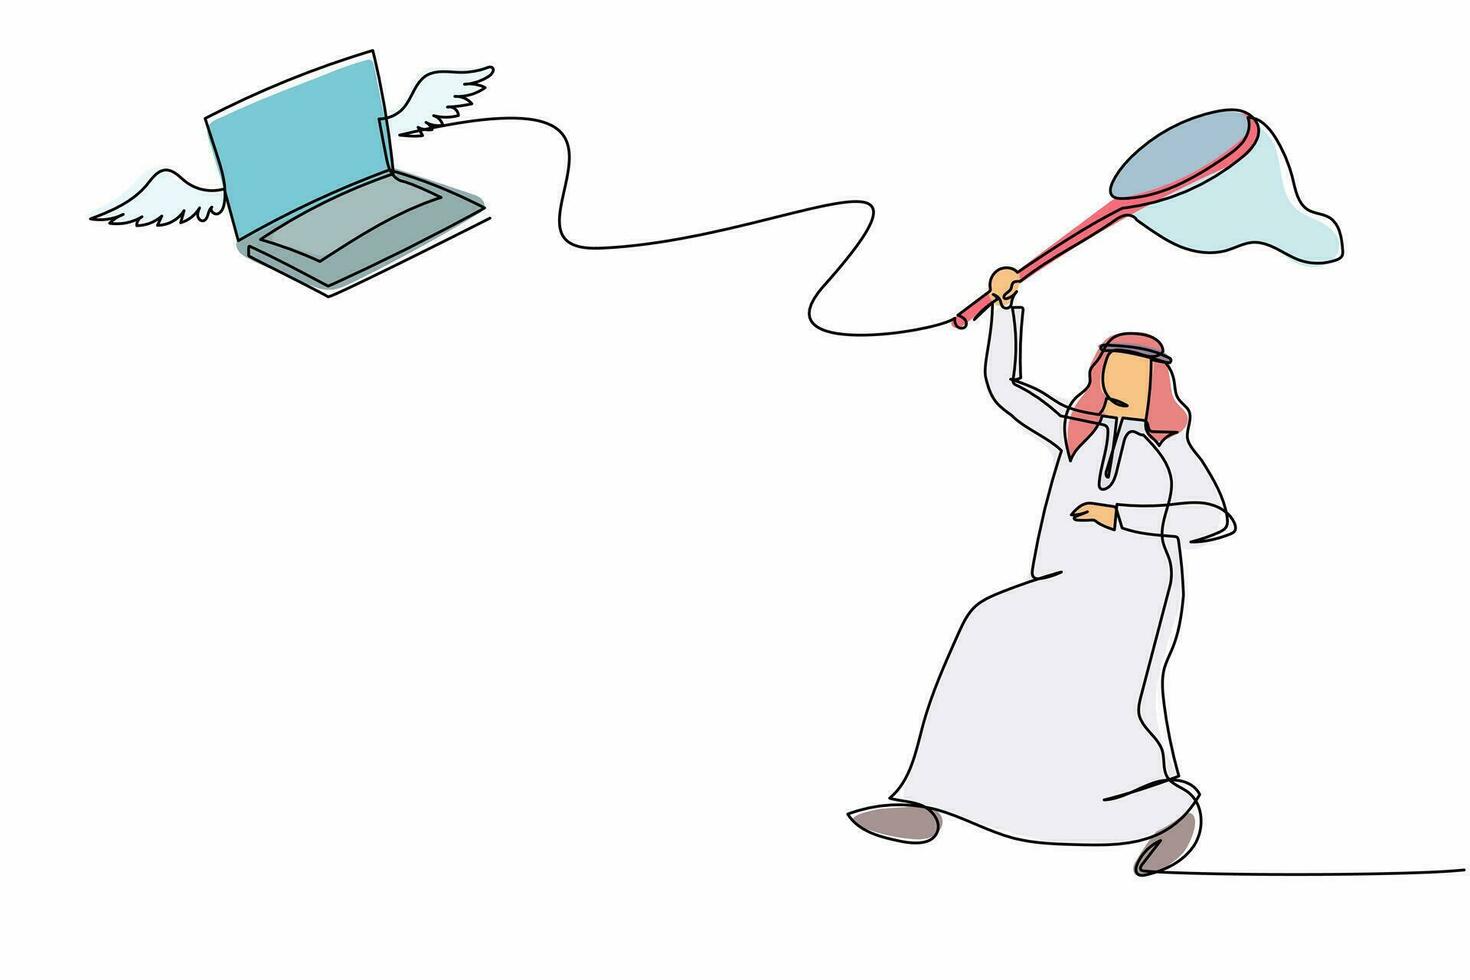 un solo hombre de negocios árabe de dibujo de una línea intenta atrapar una computadora portátil voladora con una red de mariposas. pérdida de datos importantes de la empresa. metáfora empresarial. ilustración de vector gráfico de diseño de dibujo de línea continua